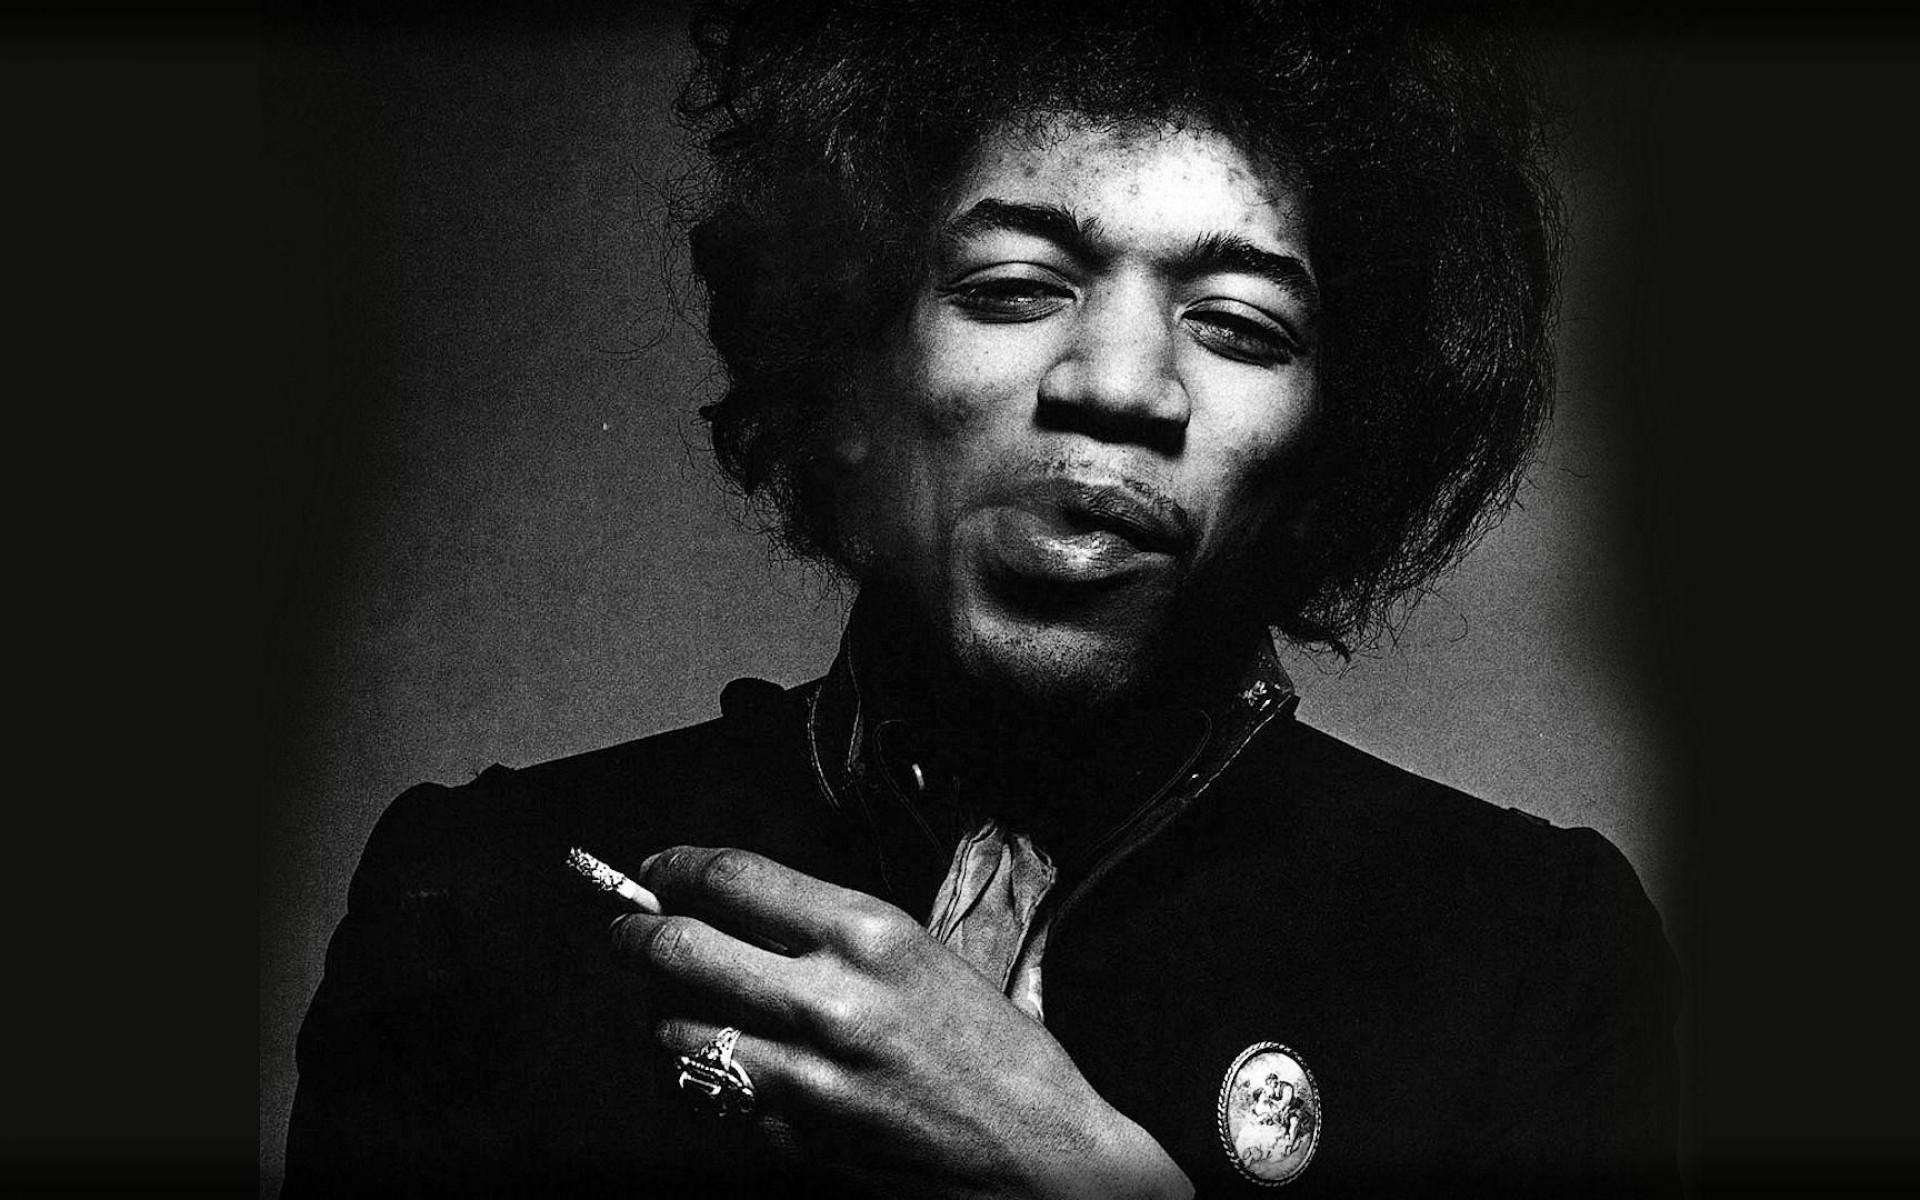 Jimi-Hendrix-best-wallpaper-1200x1920.jp